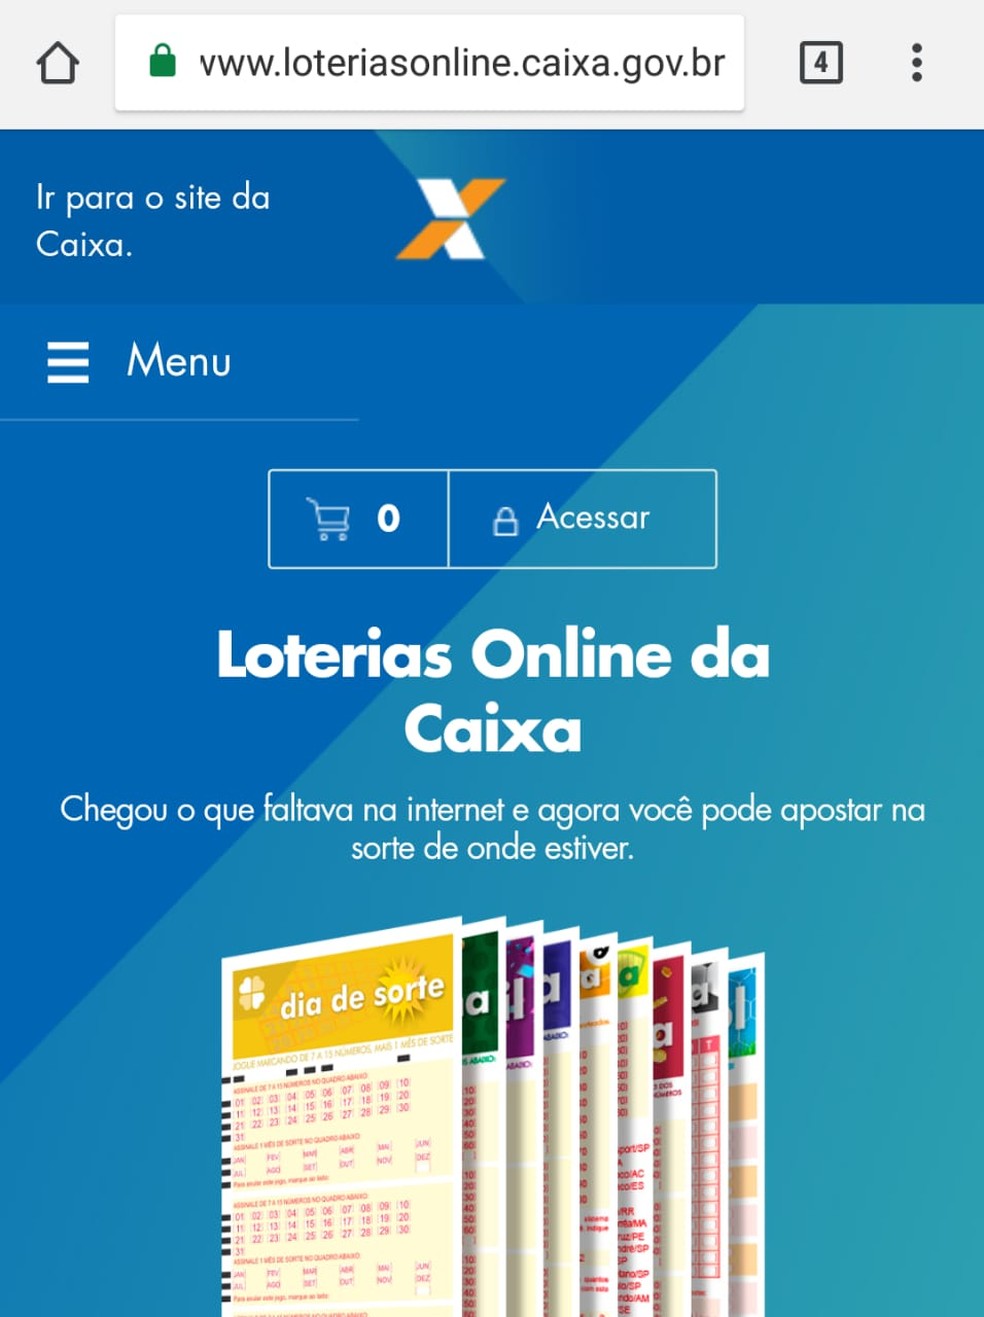 Caixa lança aplicativo para jogar na loteria pelo celular